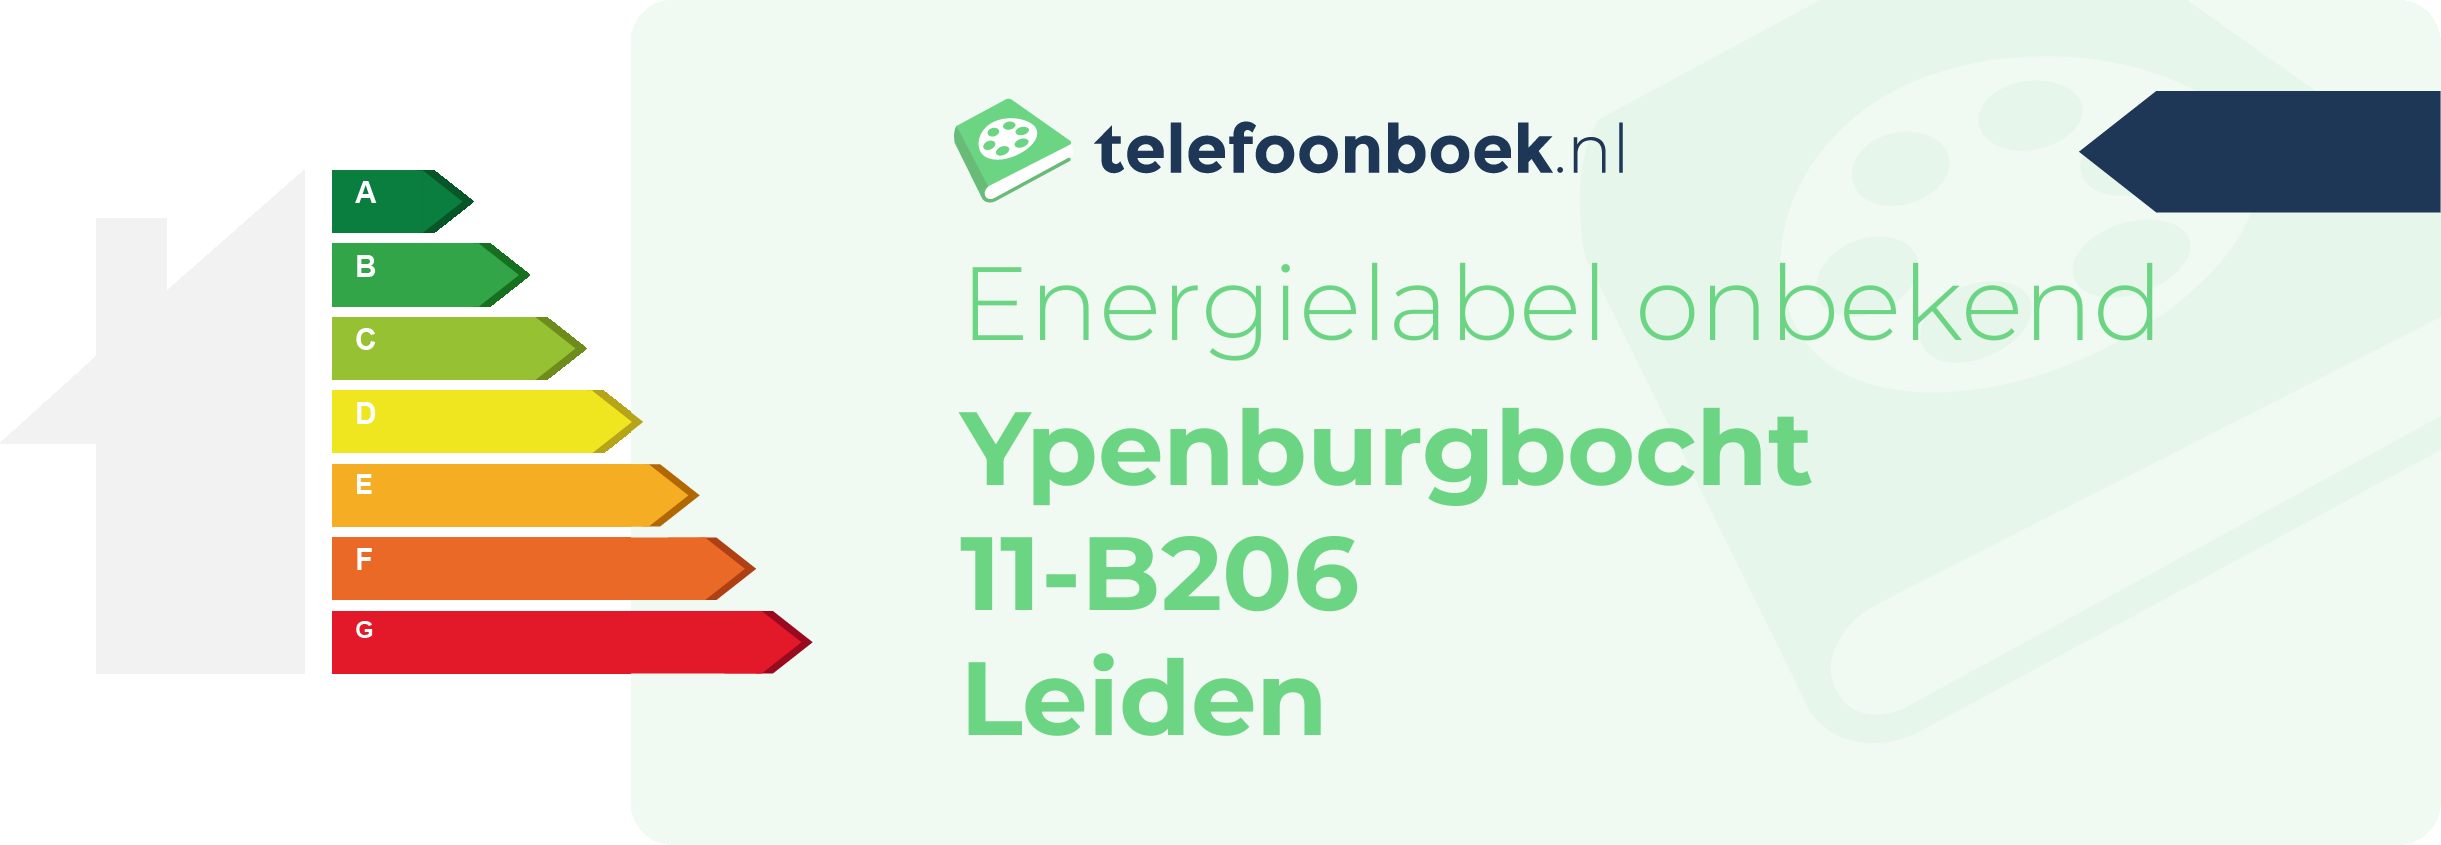 Energielabel Ypenburgbocht 11-B206 Leiden